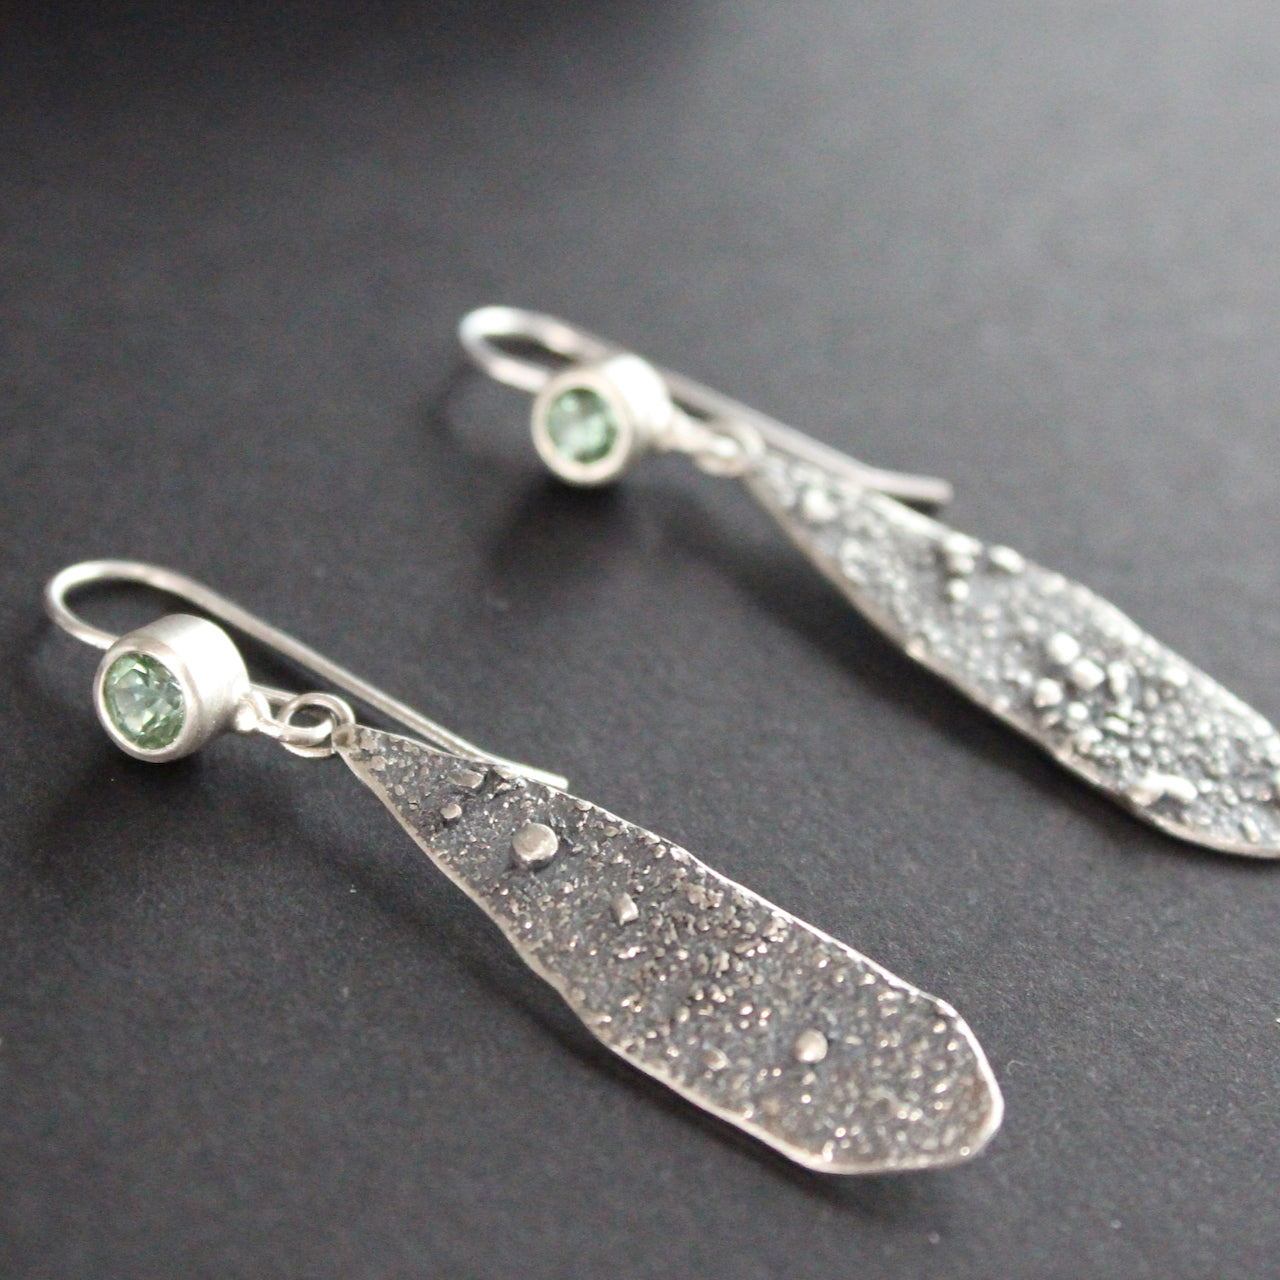 Mint green tourmaline drop earrings in textured sterling silver